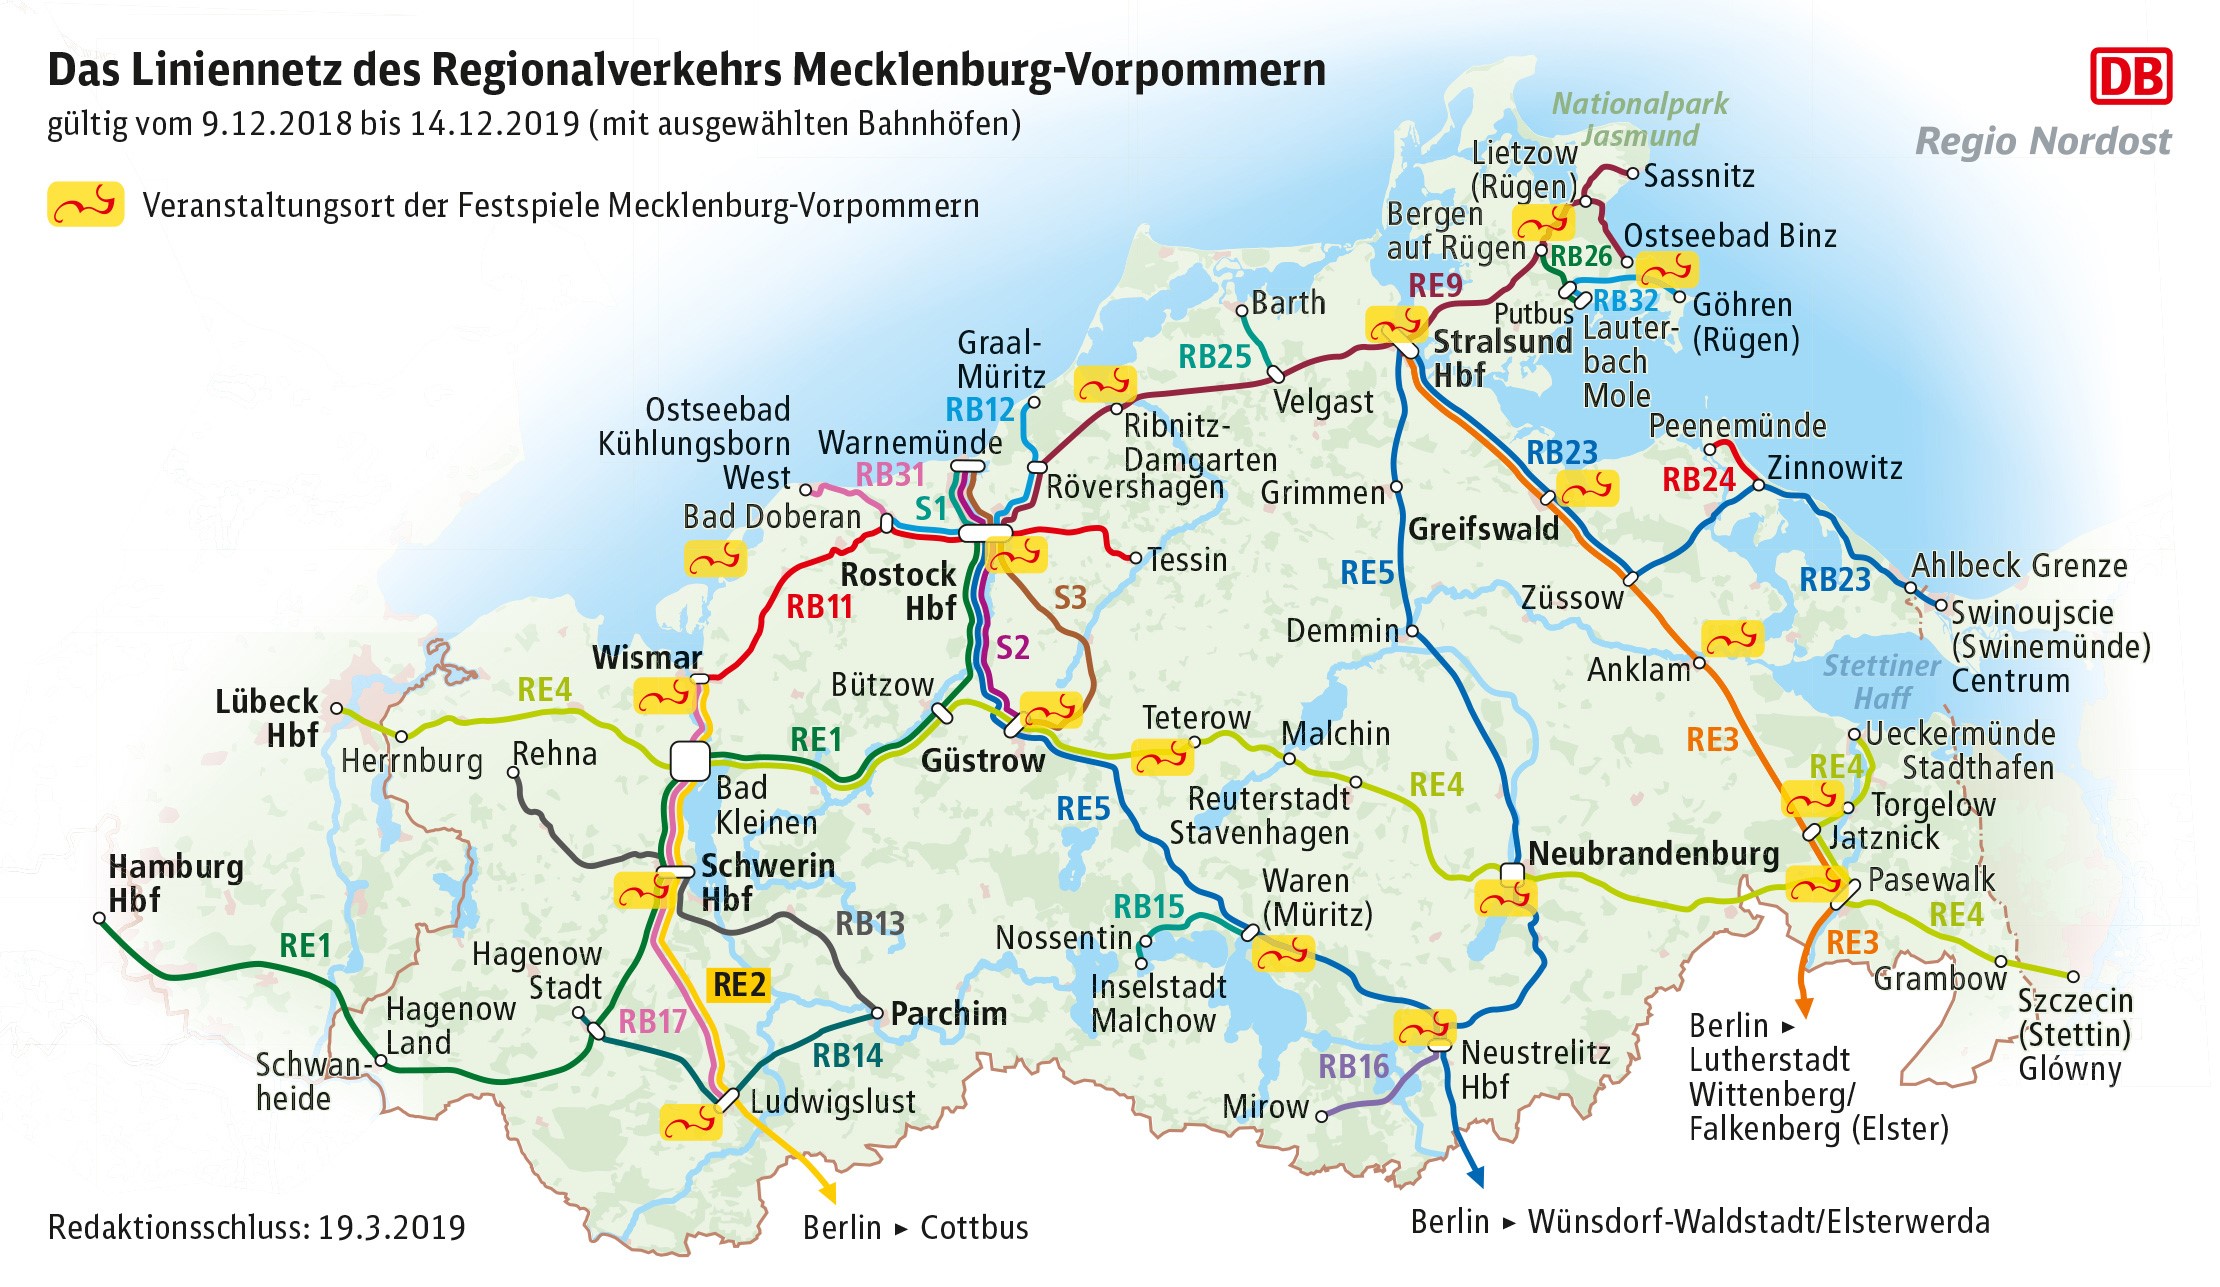 Mecklenburg-Vorpommern / Mölln, Mecklenburg-Vorpommern - Wikipedia